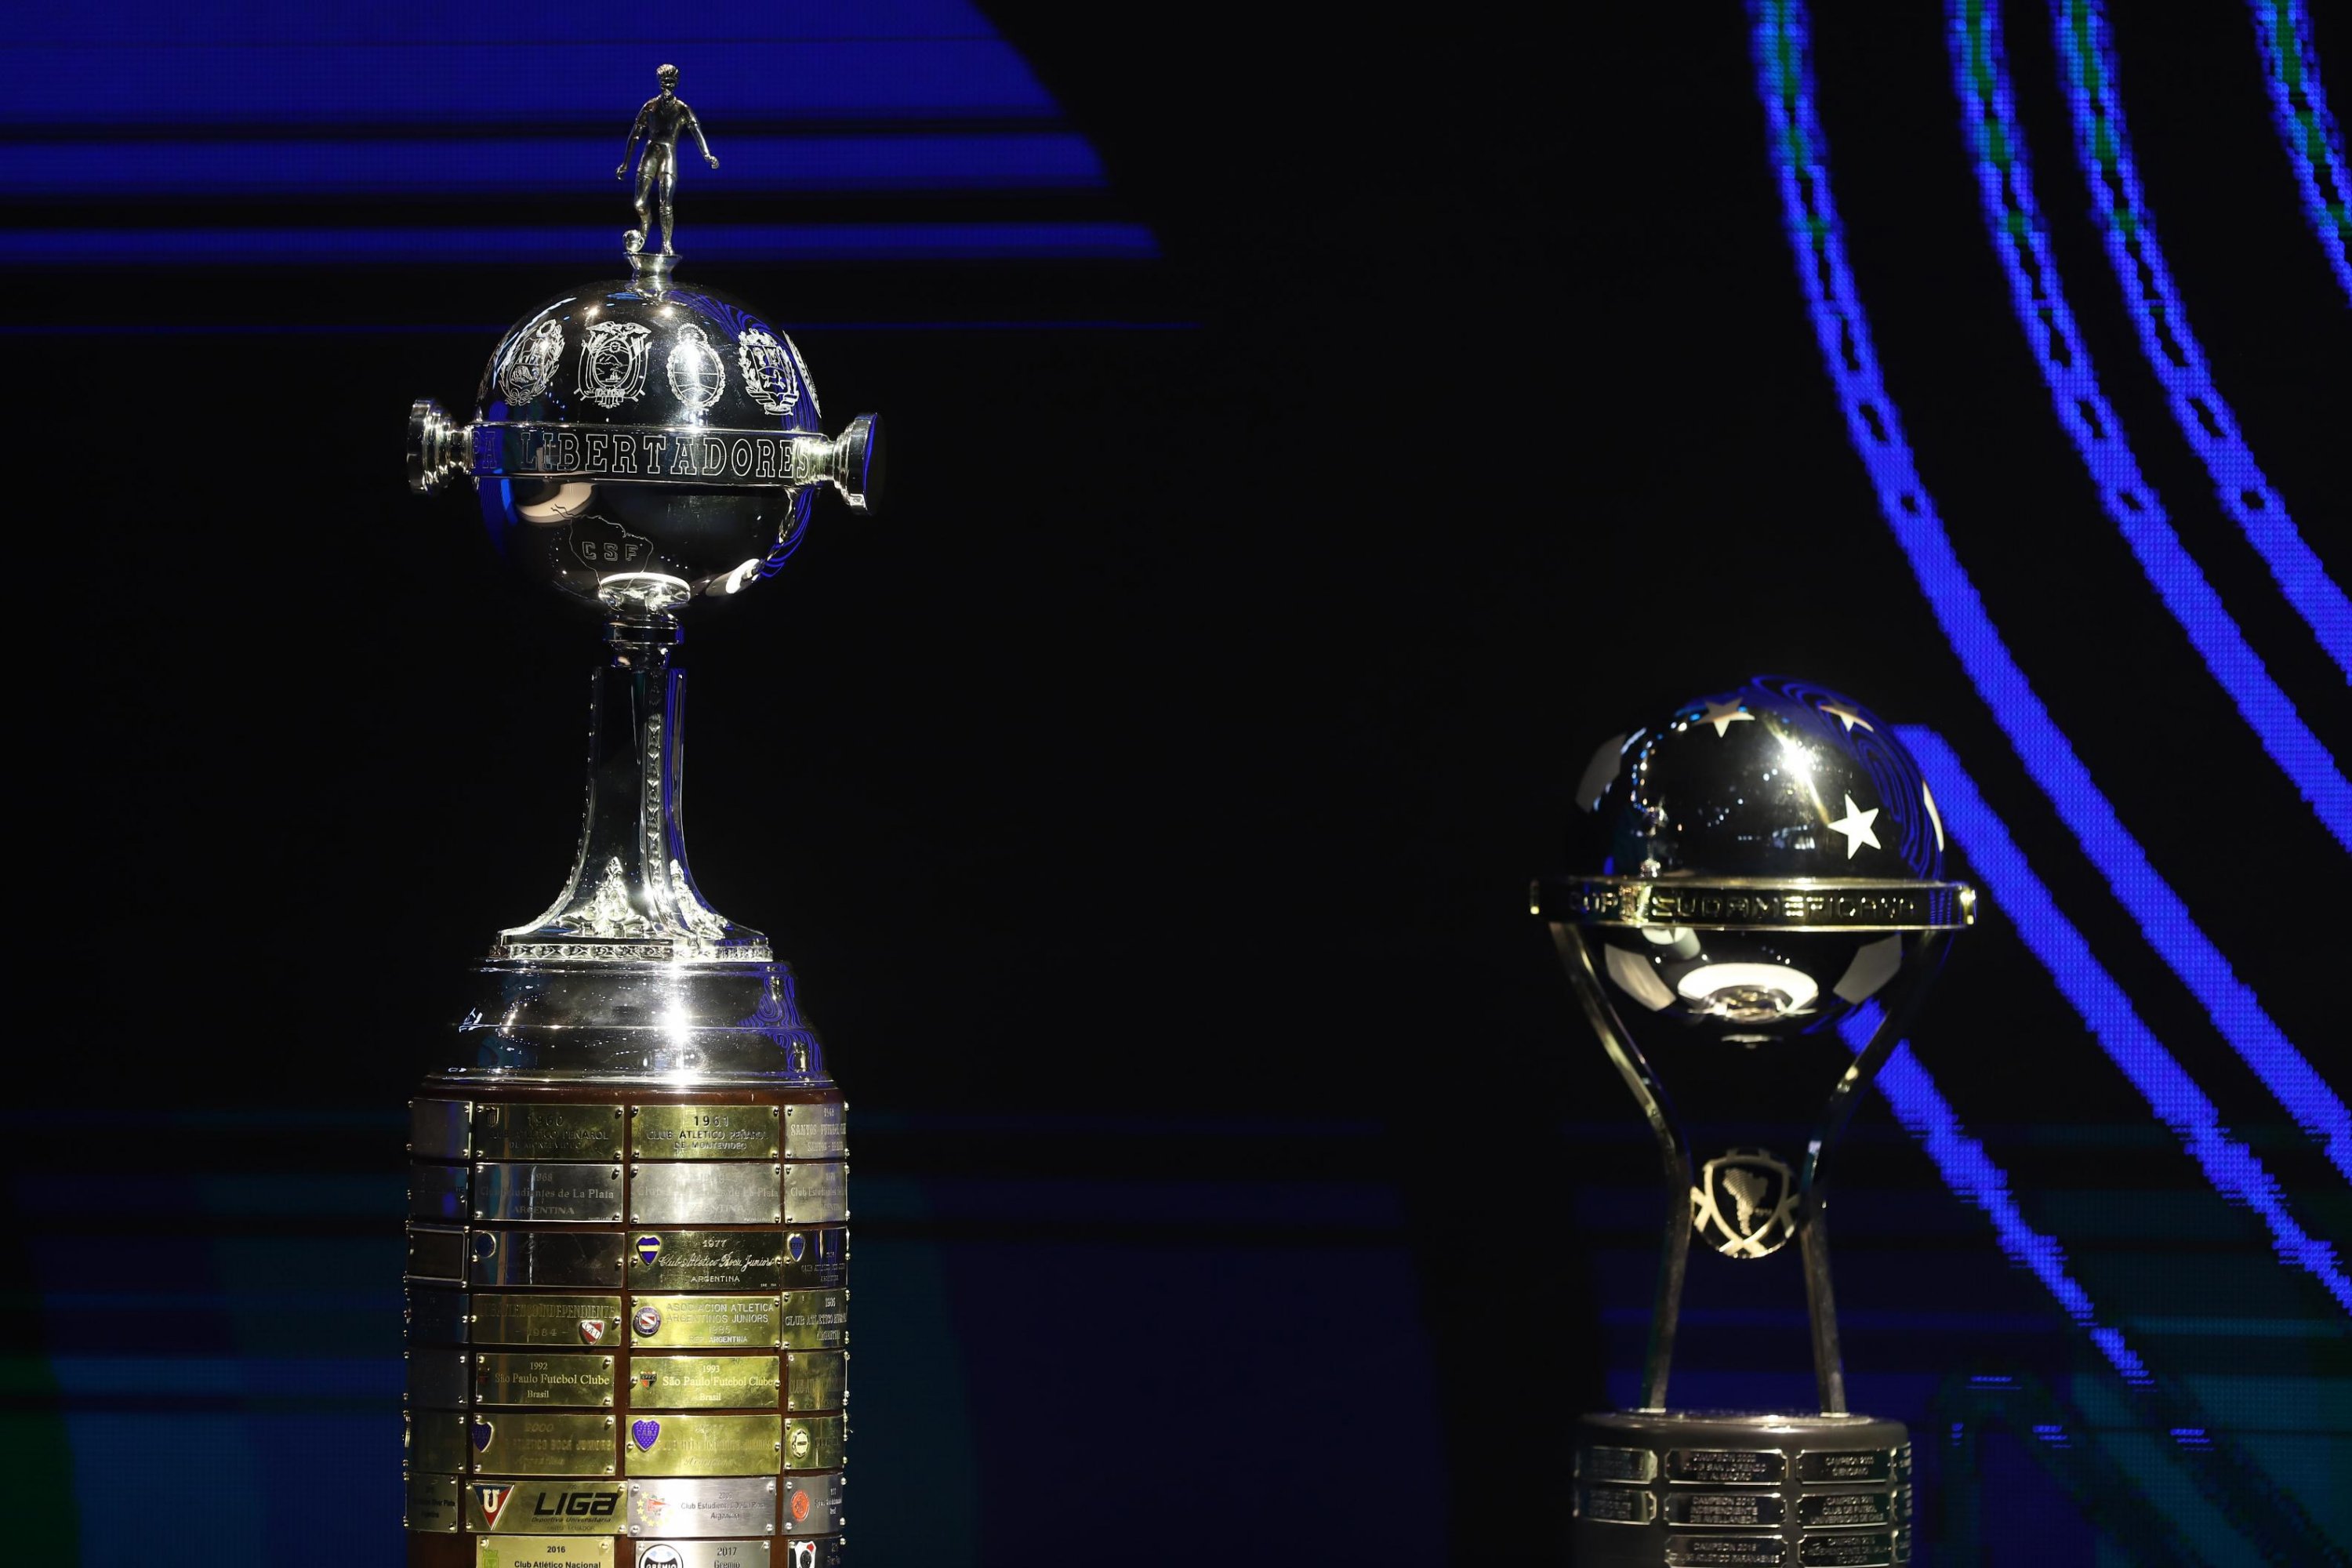 CONMEBOL divulga calendário e revela datas da Copa América e